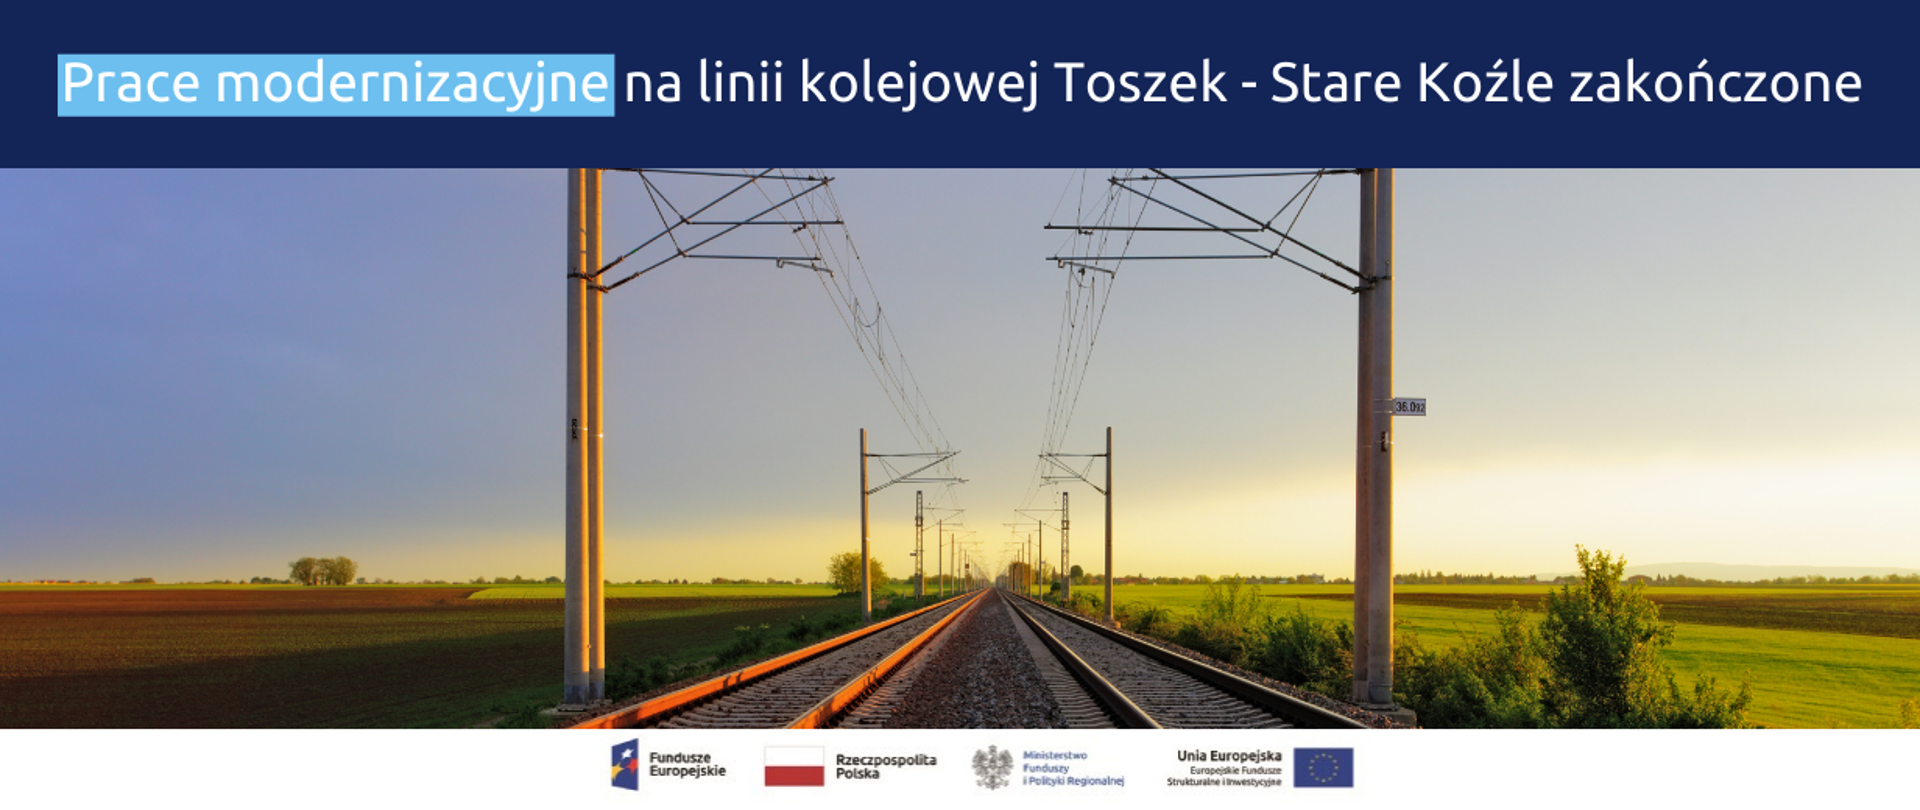 Na grafice napis: "Prace modernizacyjne na linii kolejowej Toszek - Stare Koźle zakończone", poniżej wizualizacja linii kolejowych.